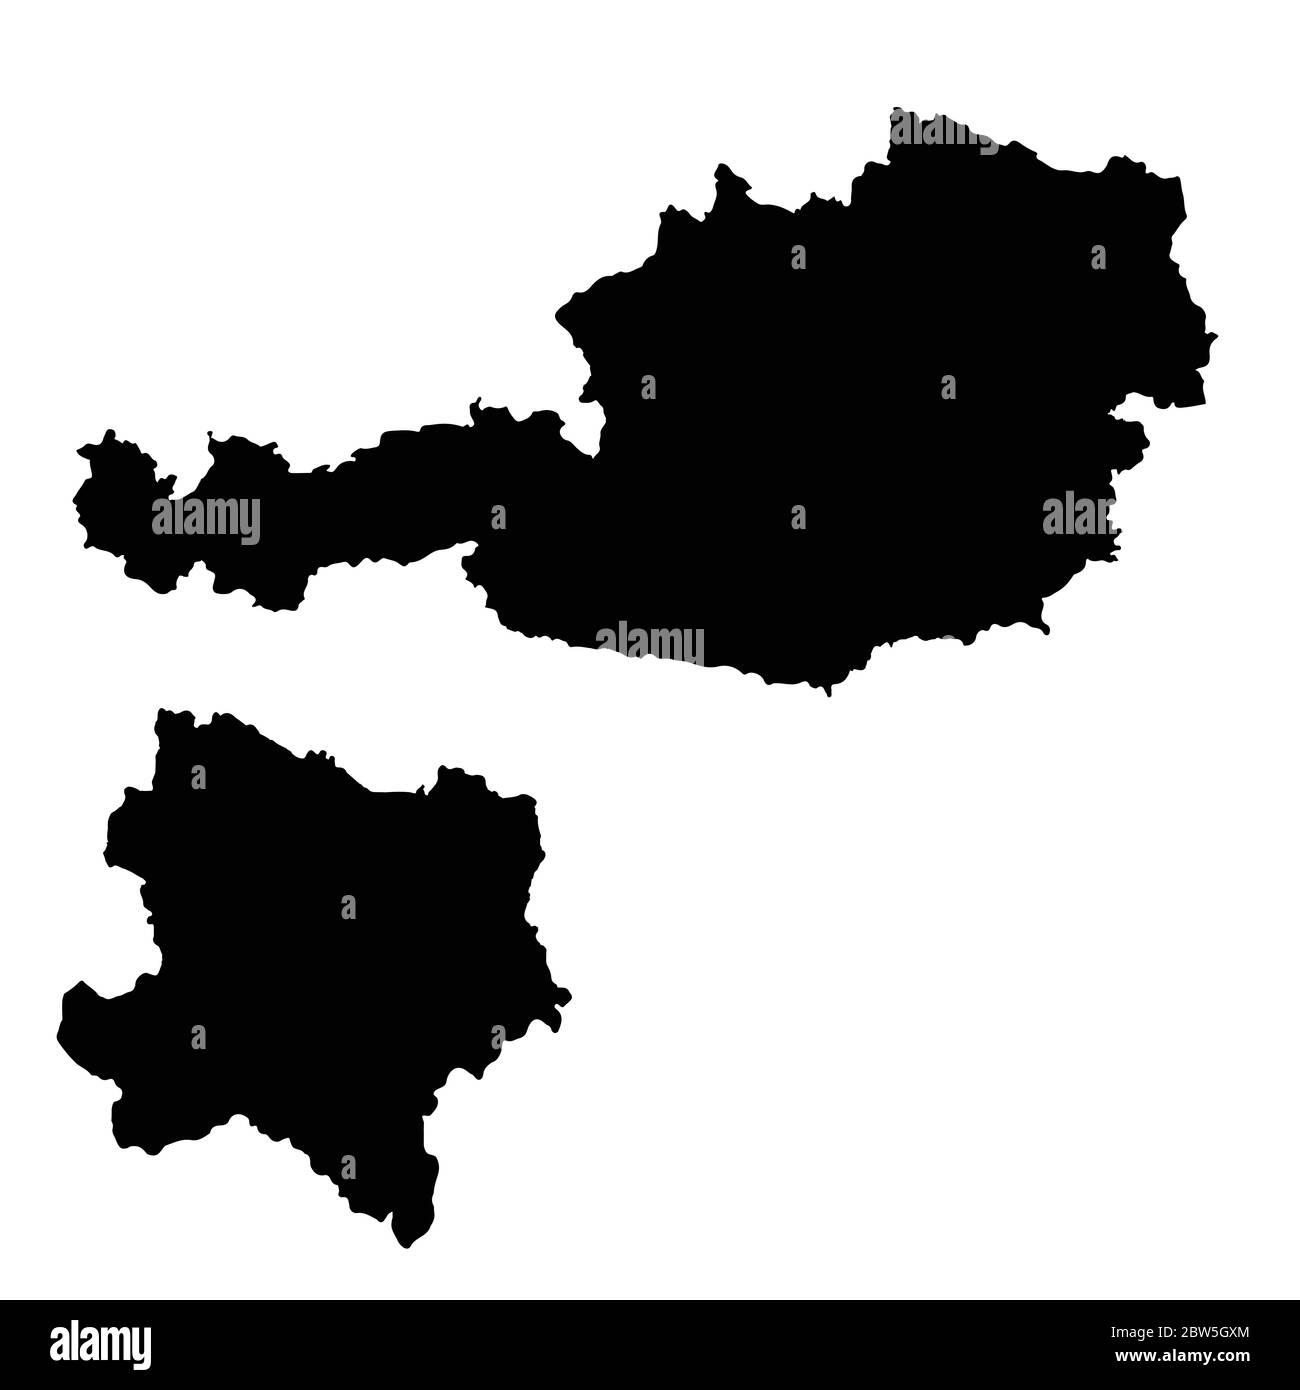 Vektorkarte Österreich und Vene. Land und Hauptstadt. Isolierte Vektorgrafik. Schwarz auf weißem Hintergrund. EPS 10-Abbildung. Stock Vektor